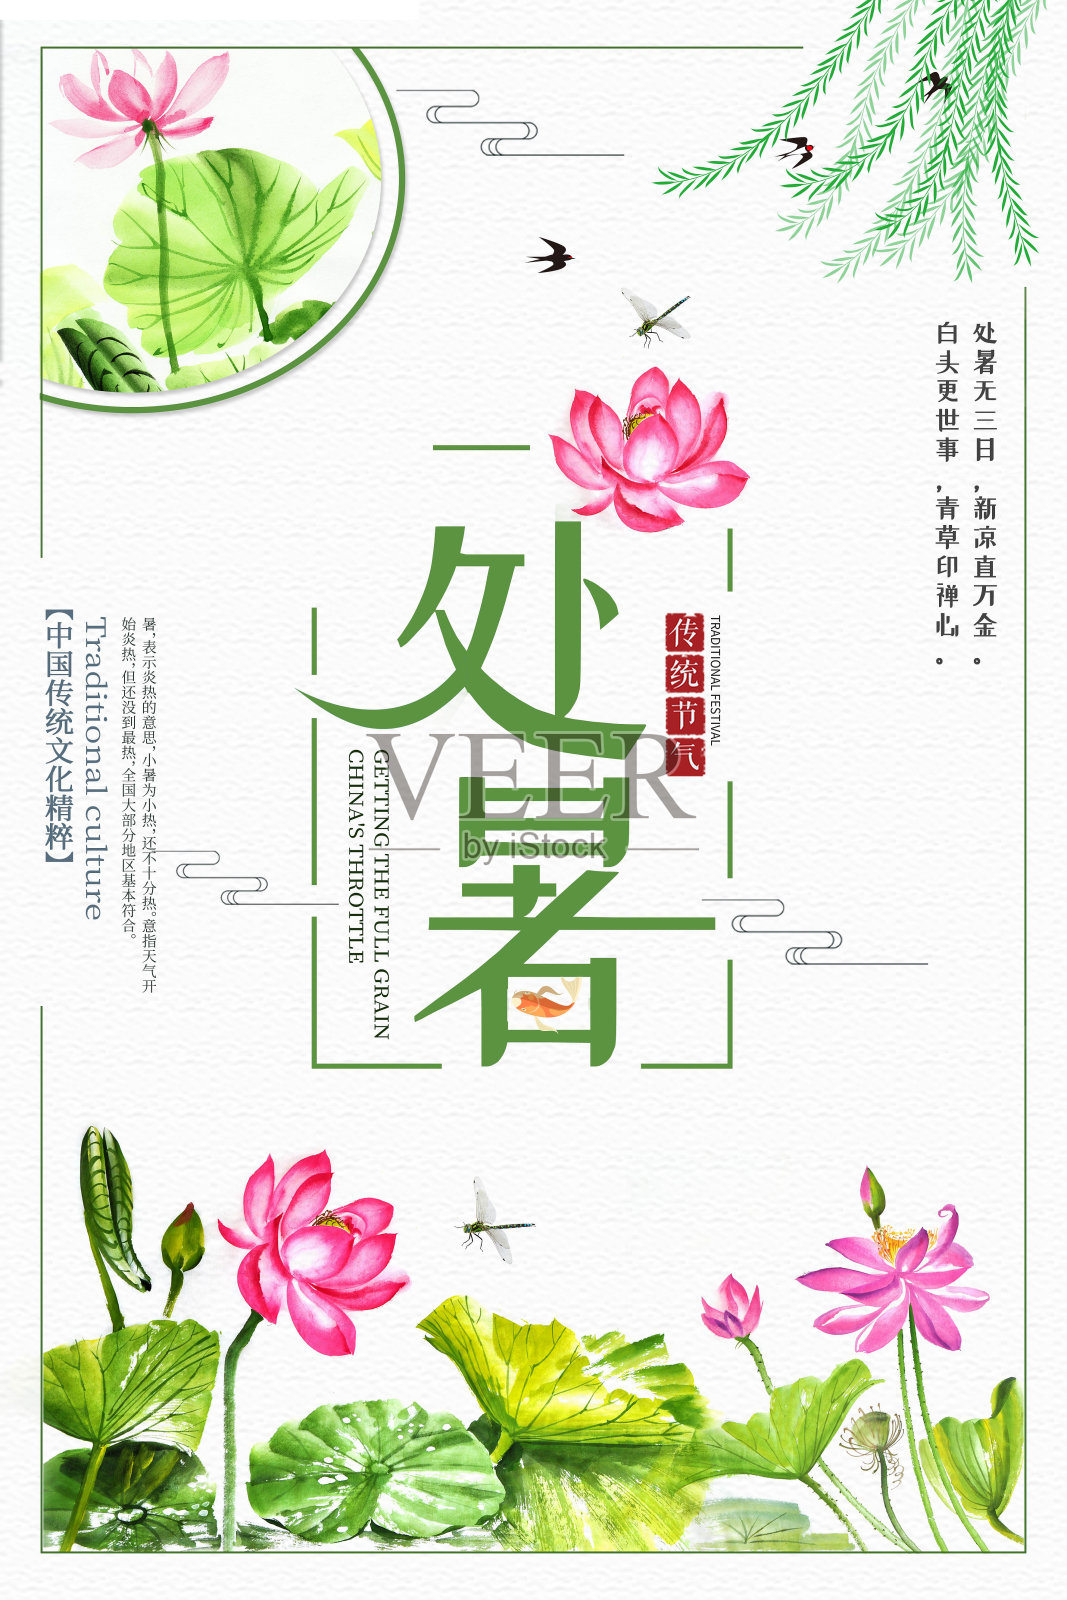 简约中国风手绘处暑二十四节气海报设计模板素材